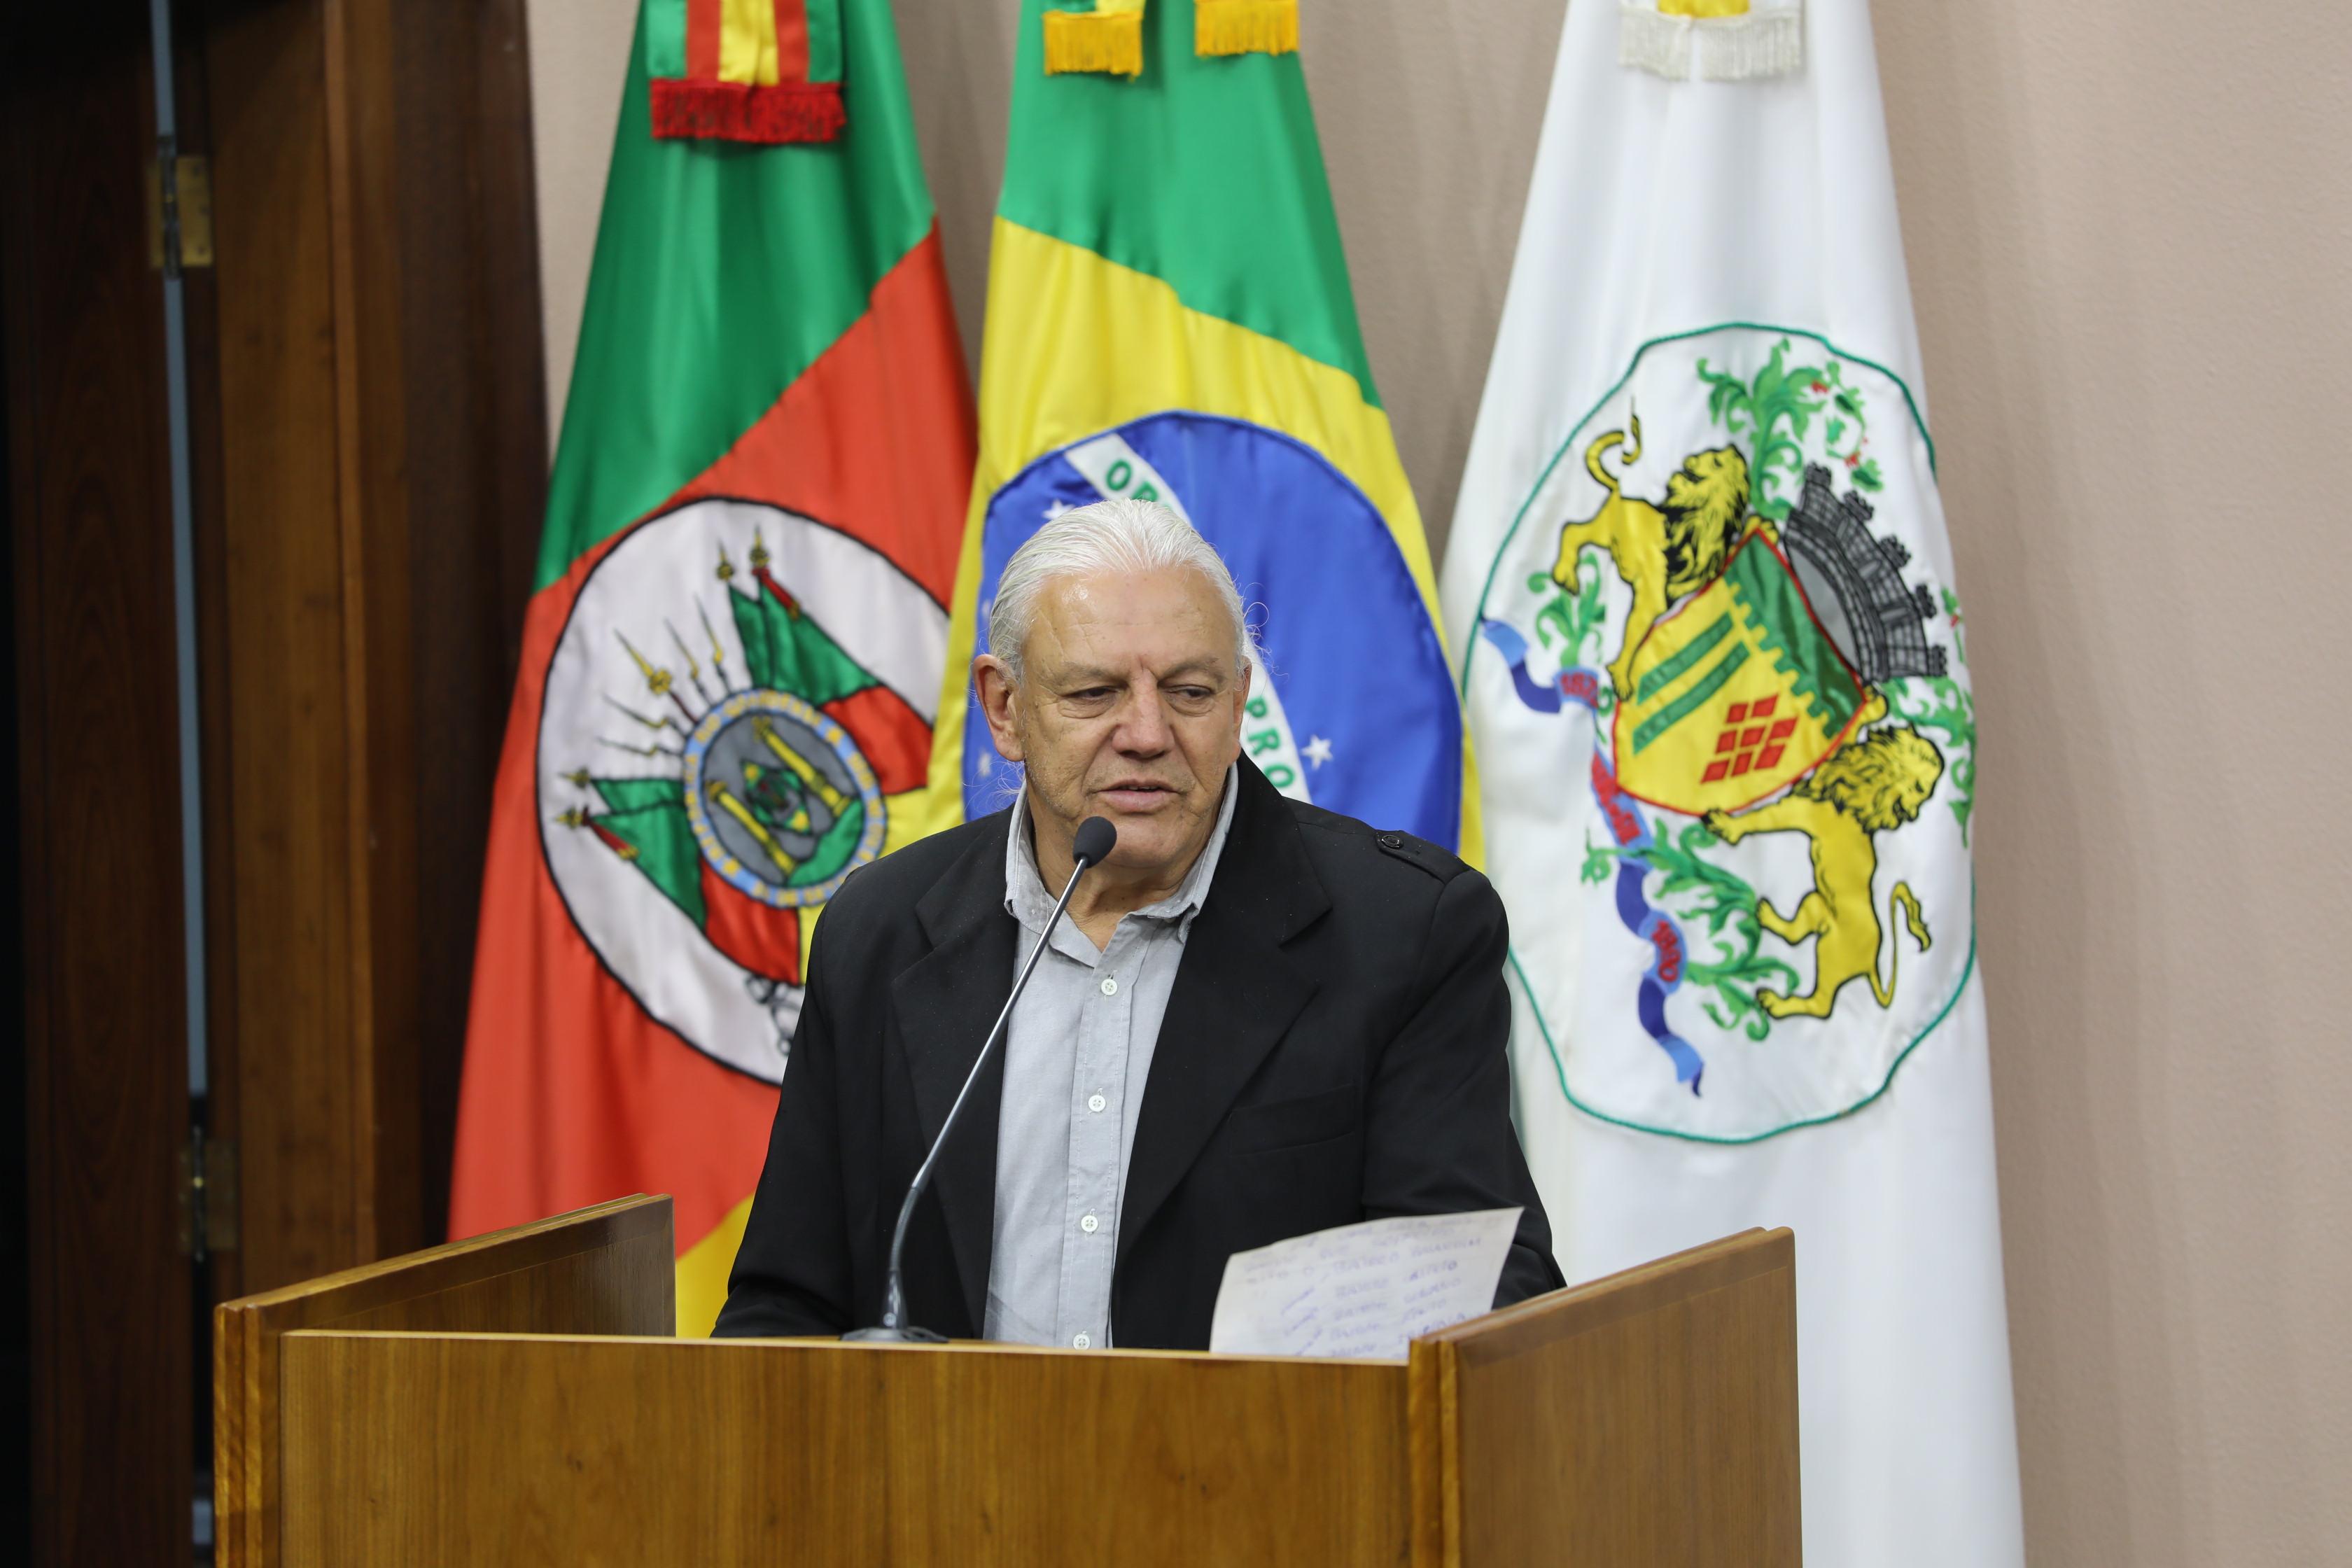 Clóvis de Oliveira faz indicação ao Executivo para redução de tarifas municipais às famílias atingidas pelas chuvas